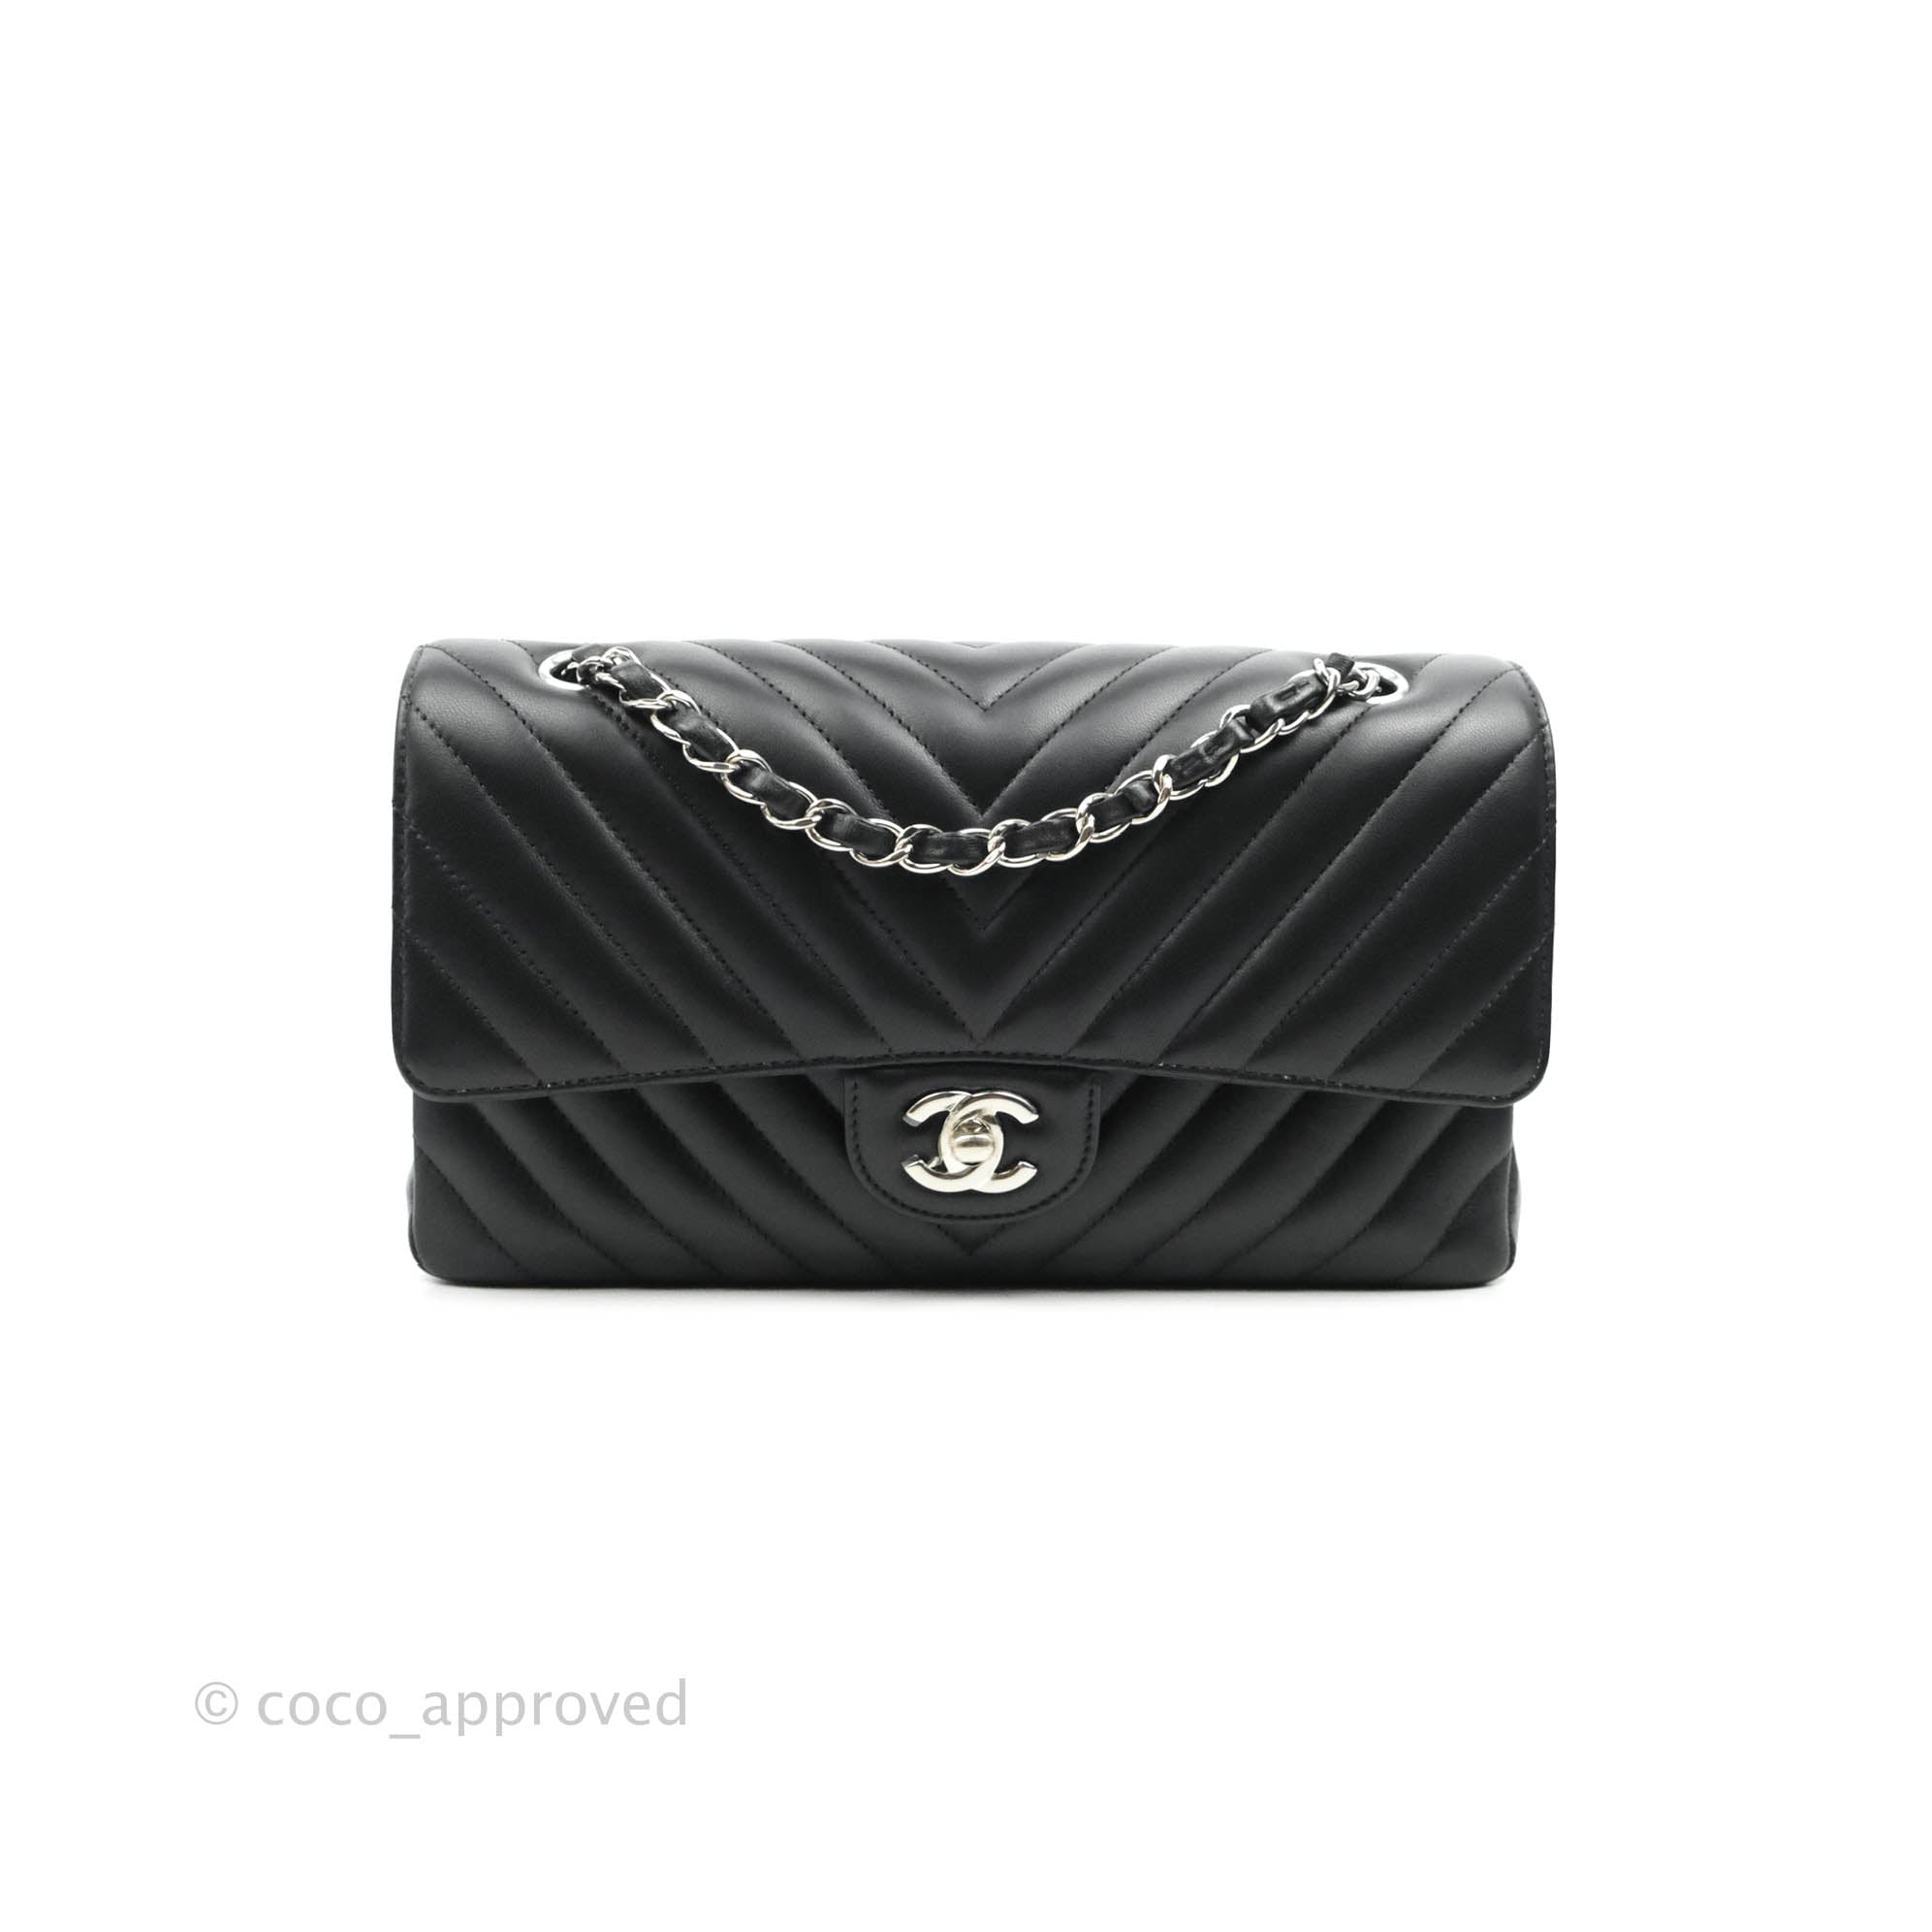 Chanel Classic Small, Beige Chevron Matte Caviar with Gold Hardware, New in  Box WA001